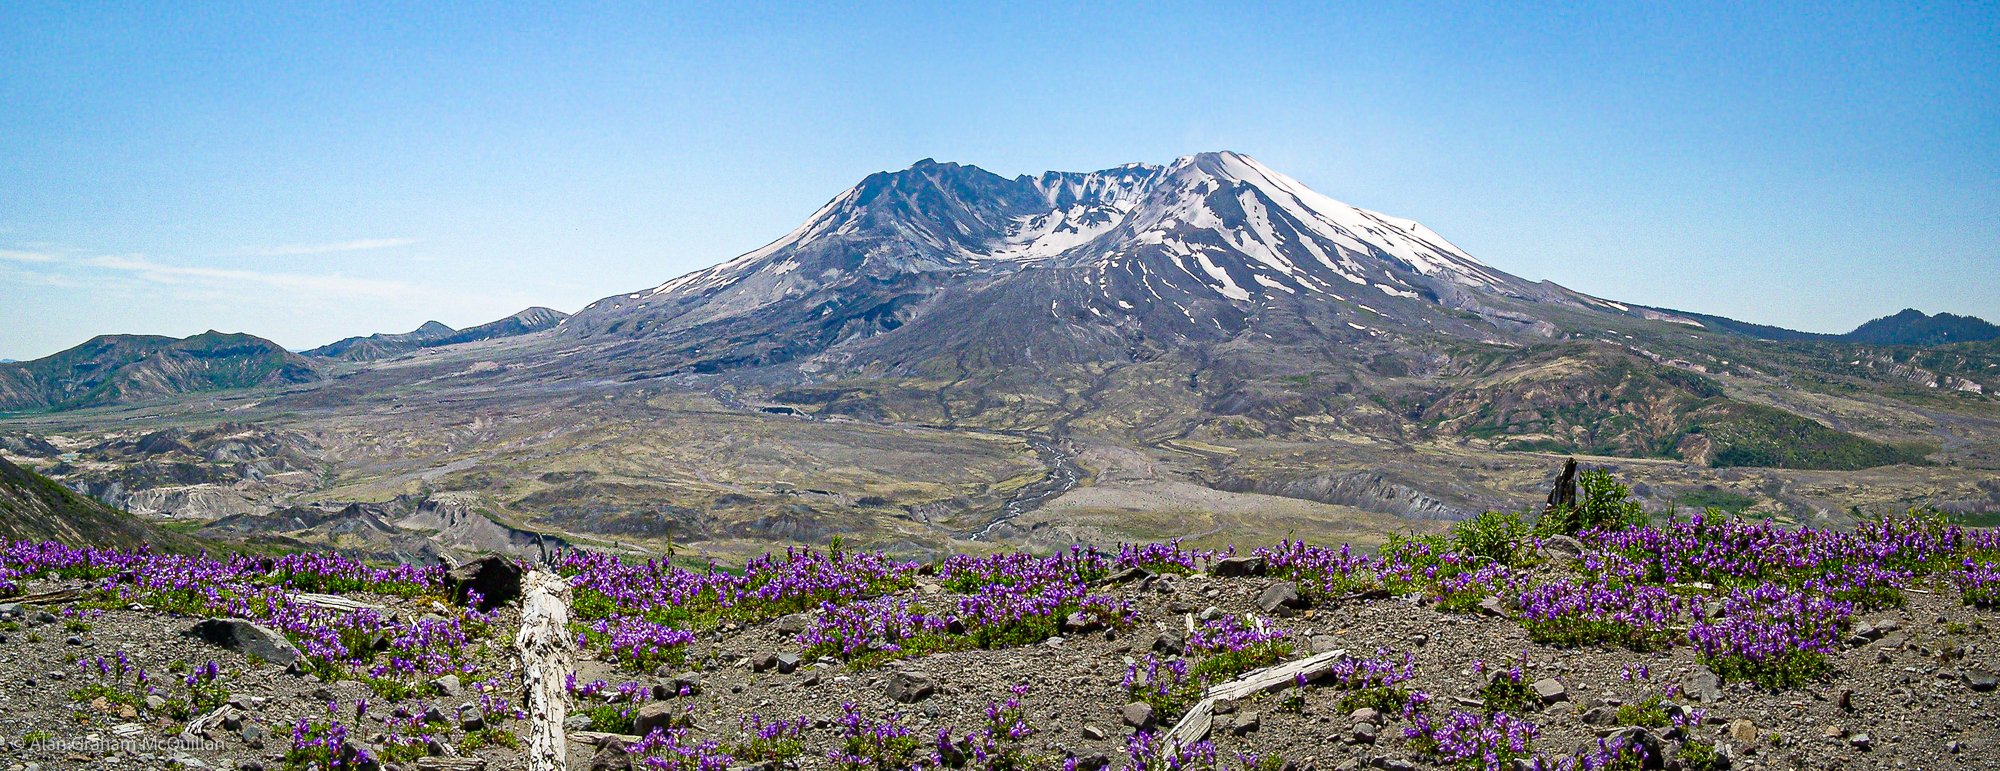 Mount Saint Helens National Volcanic Monument, Washington